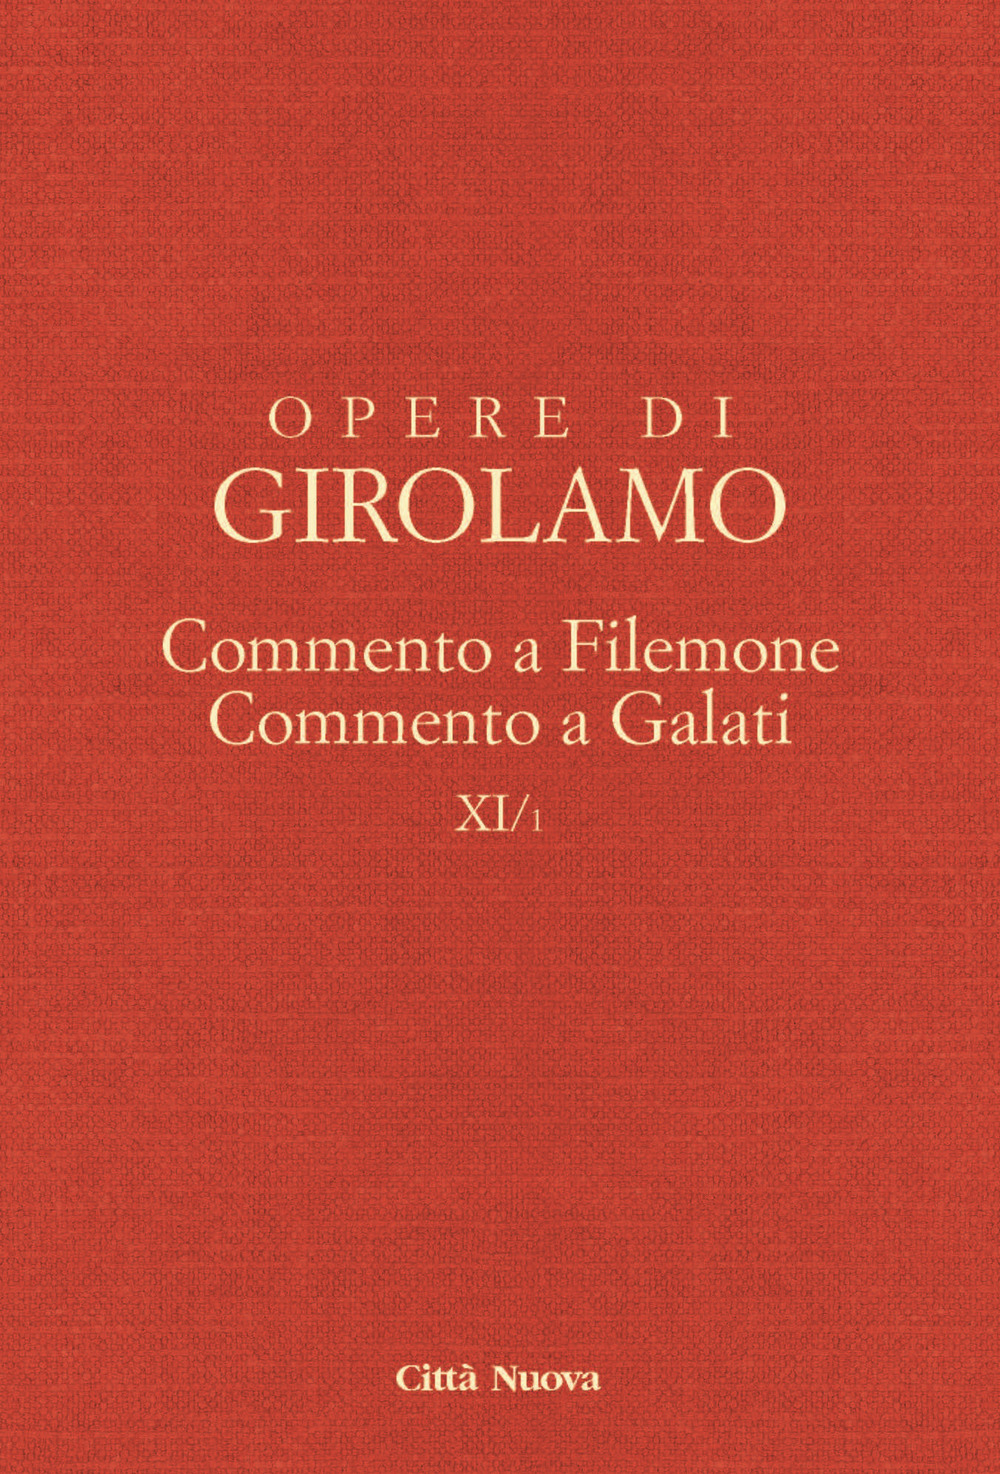 Opere di Girolamo. Vol. 11/1: Commento a Filemone-Commento a Galati